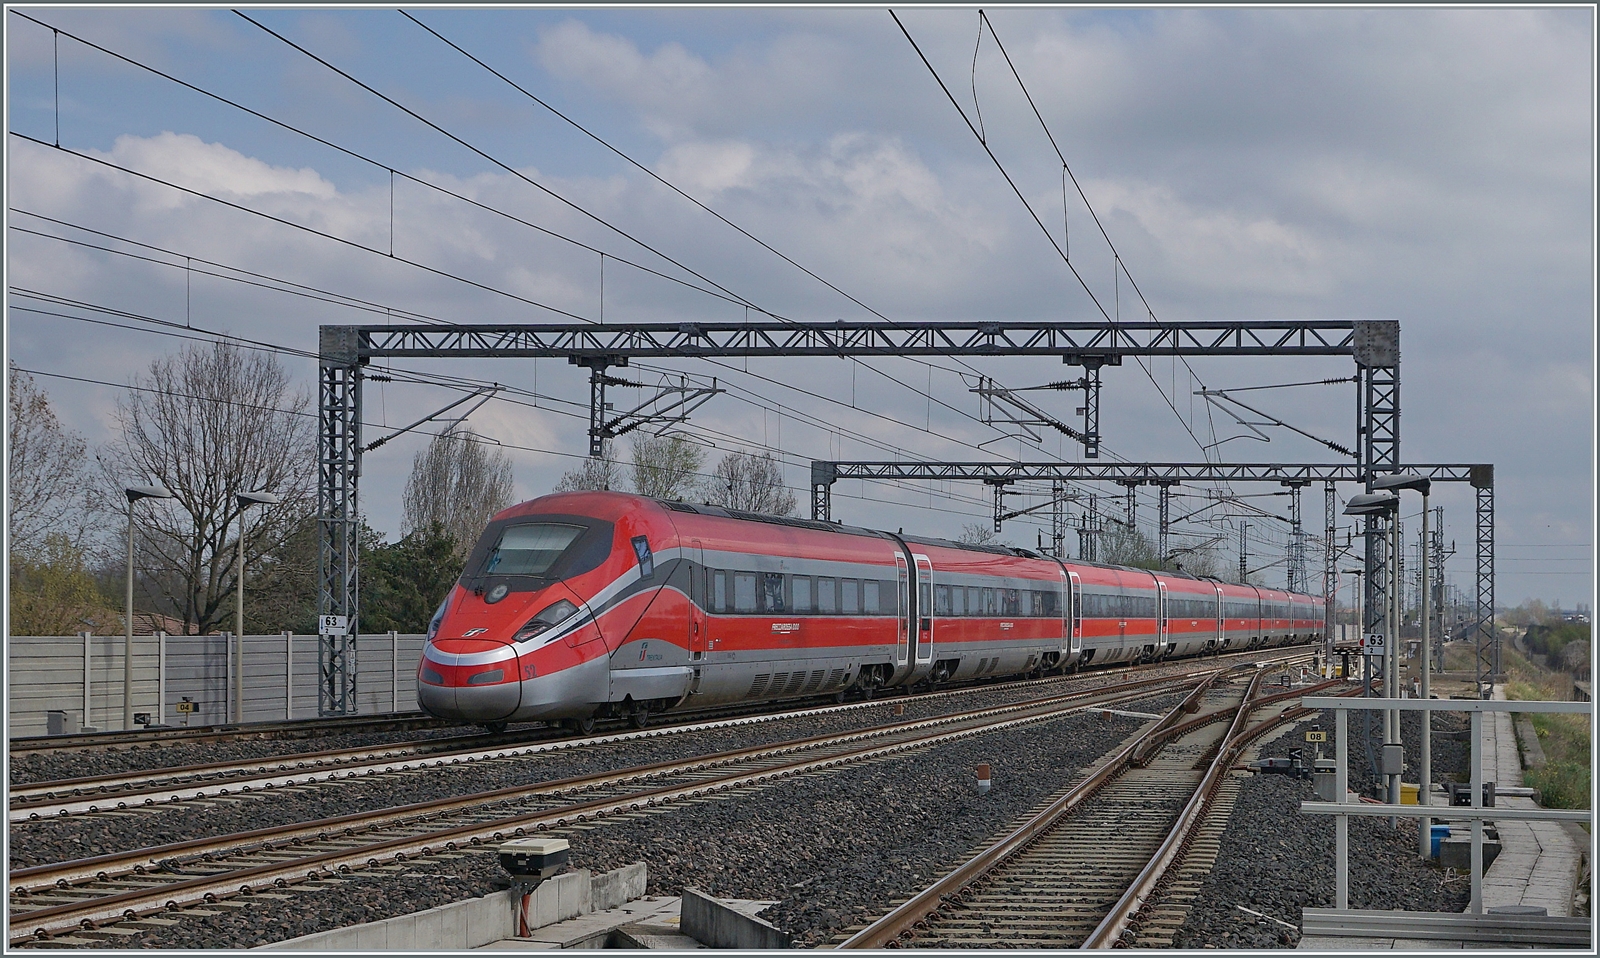 Der nachfolgende FS Treniatlia wird durch den voraus gefahrenen Zug etwas abgebremst. Der ETR 400 052 ist als Frecciarossa 1000 9631 von Milano (ab 13.00) nach Napoli (an 17:30) unterwegs. 

14. März 2023